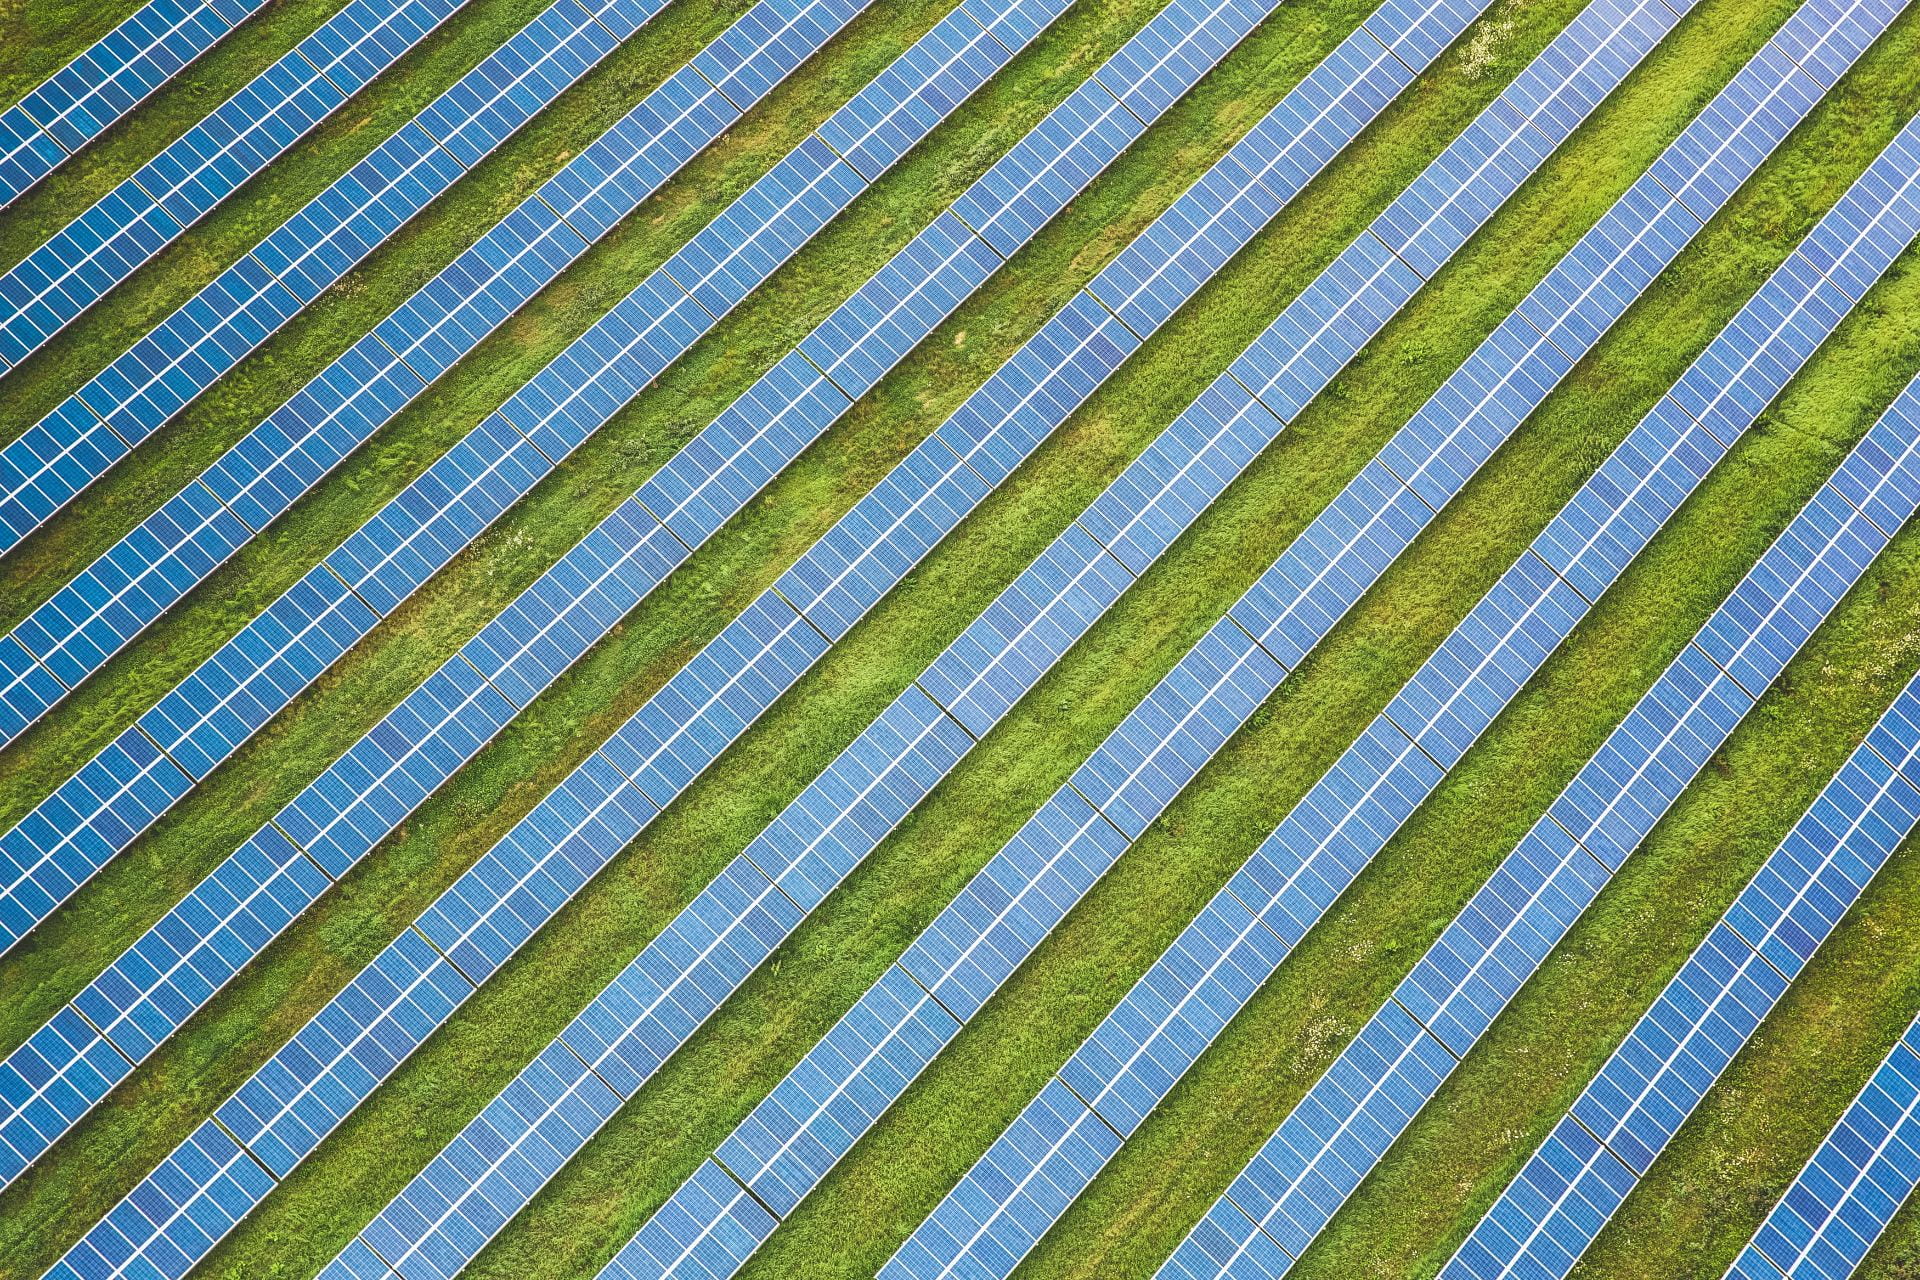 Solar tiles in Germany